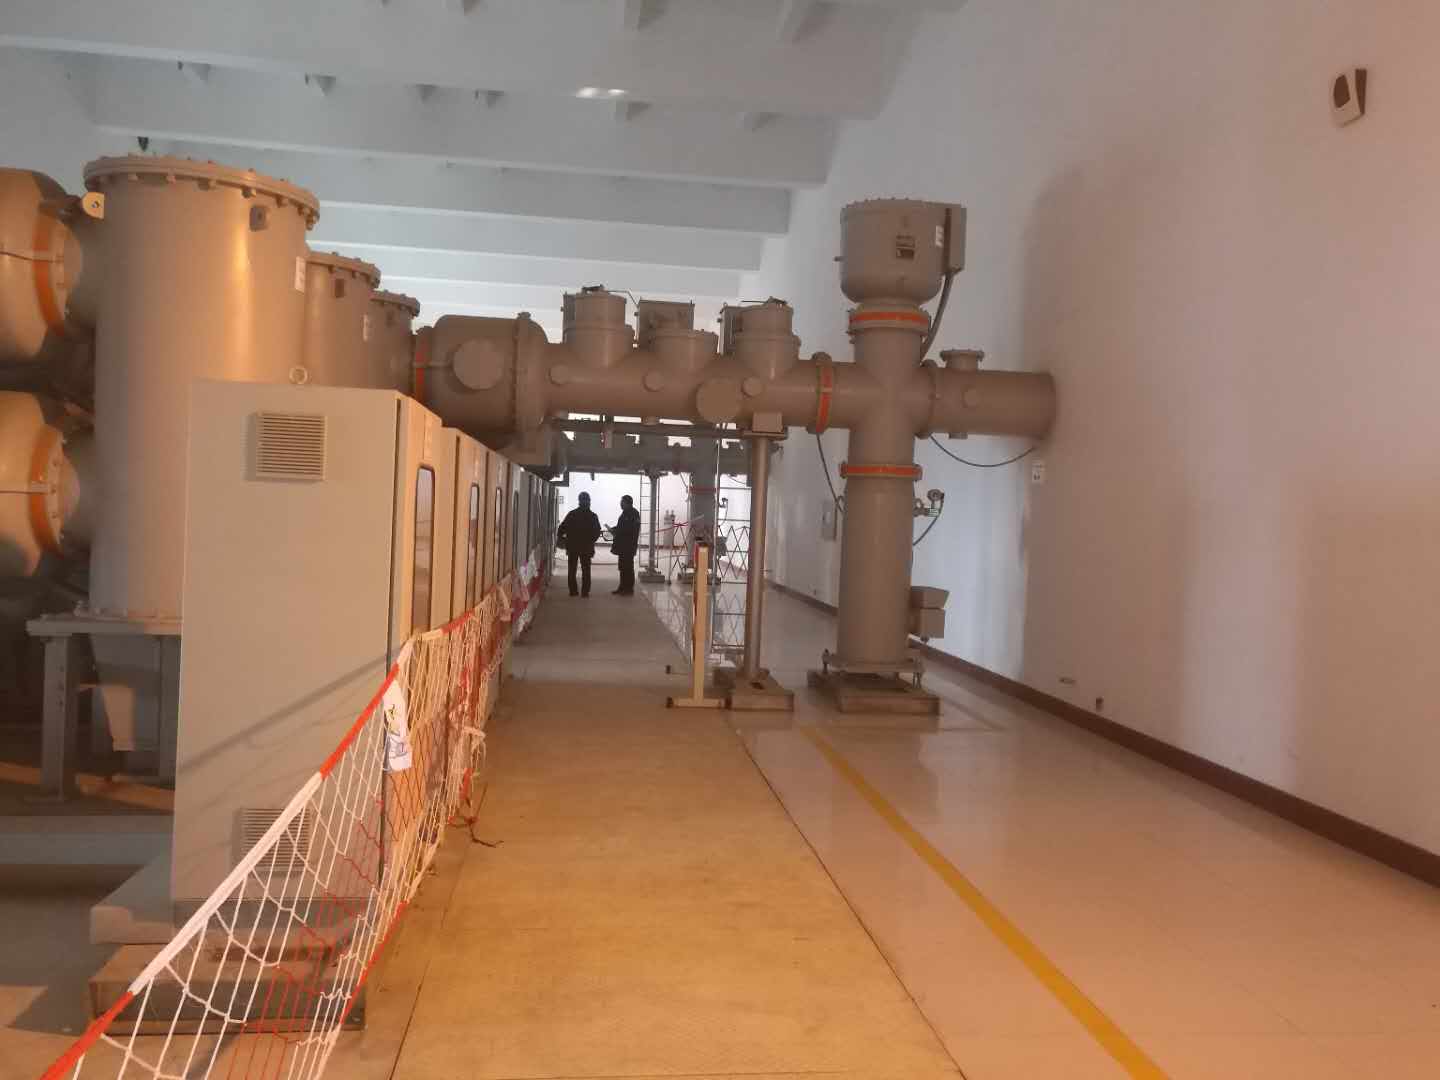 山东移动潍坊分公司综合楼市电扩容项目工程